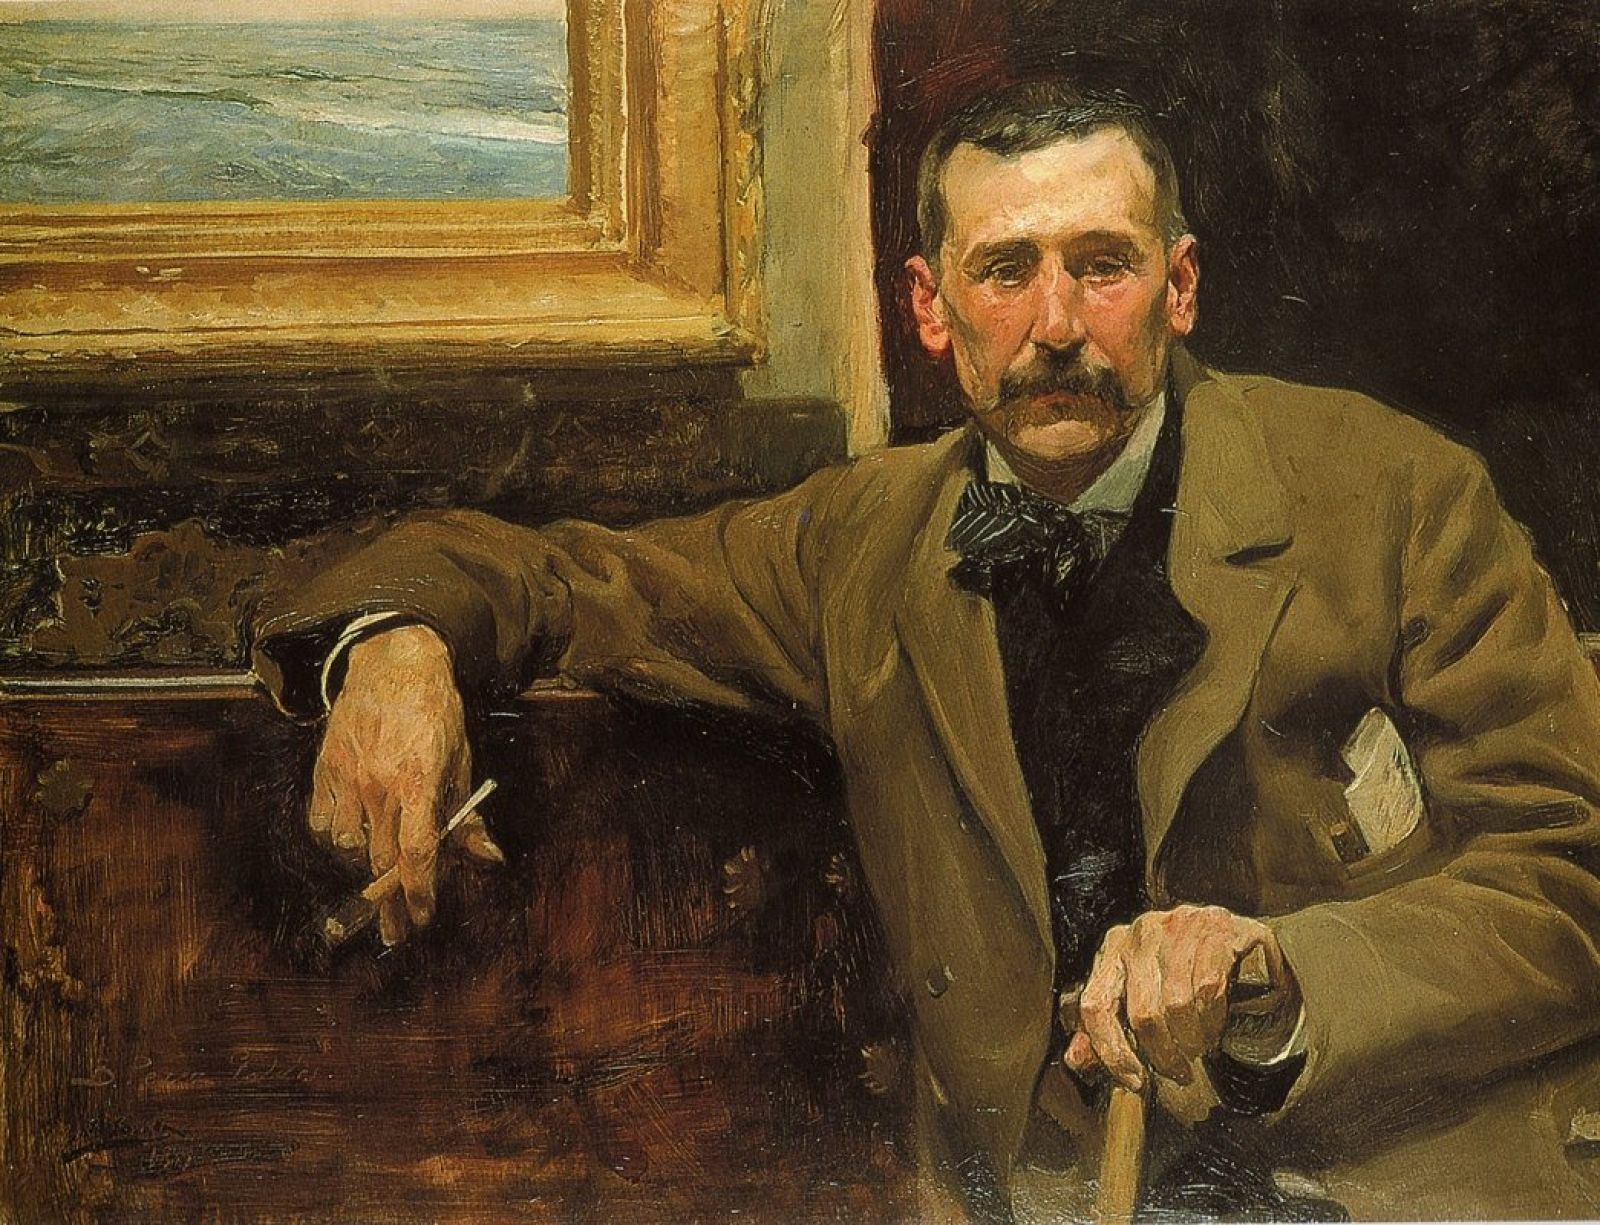 Retrato de Pérez Galdós, pintado por Joaquín Sorolla en 1894